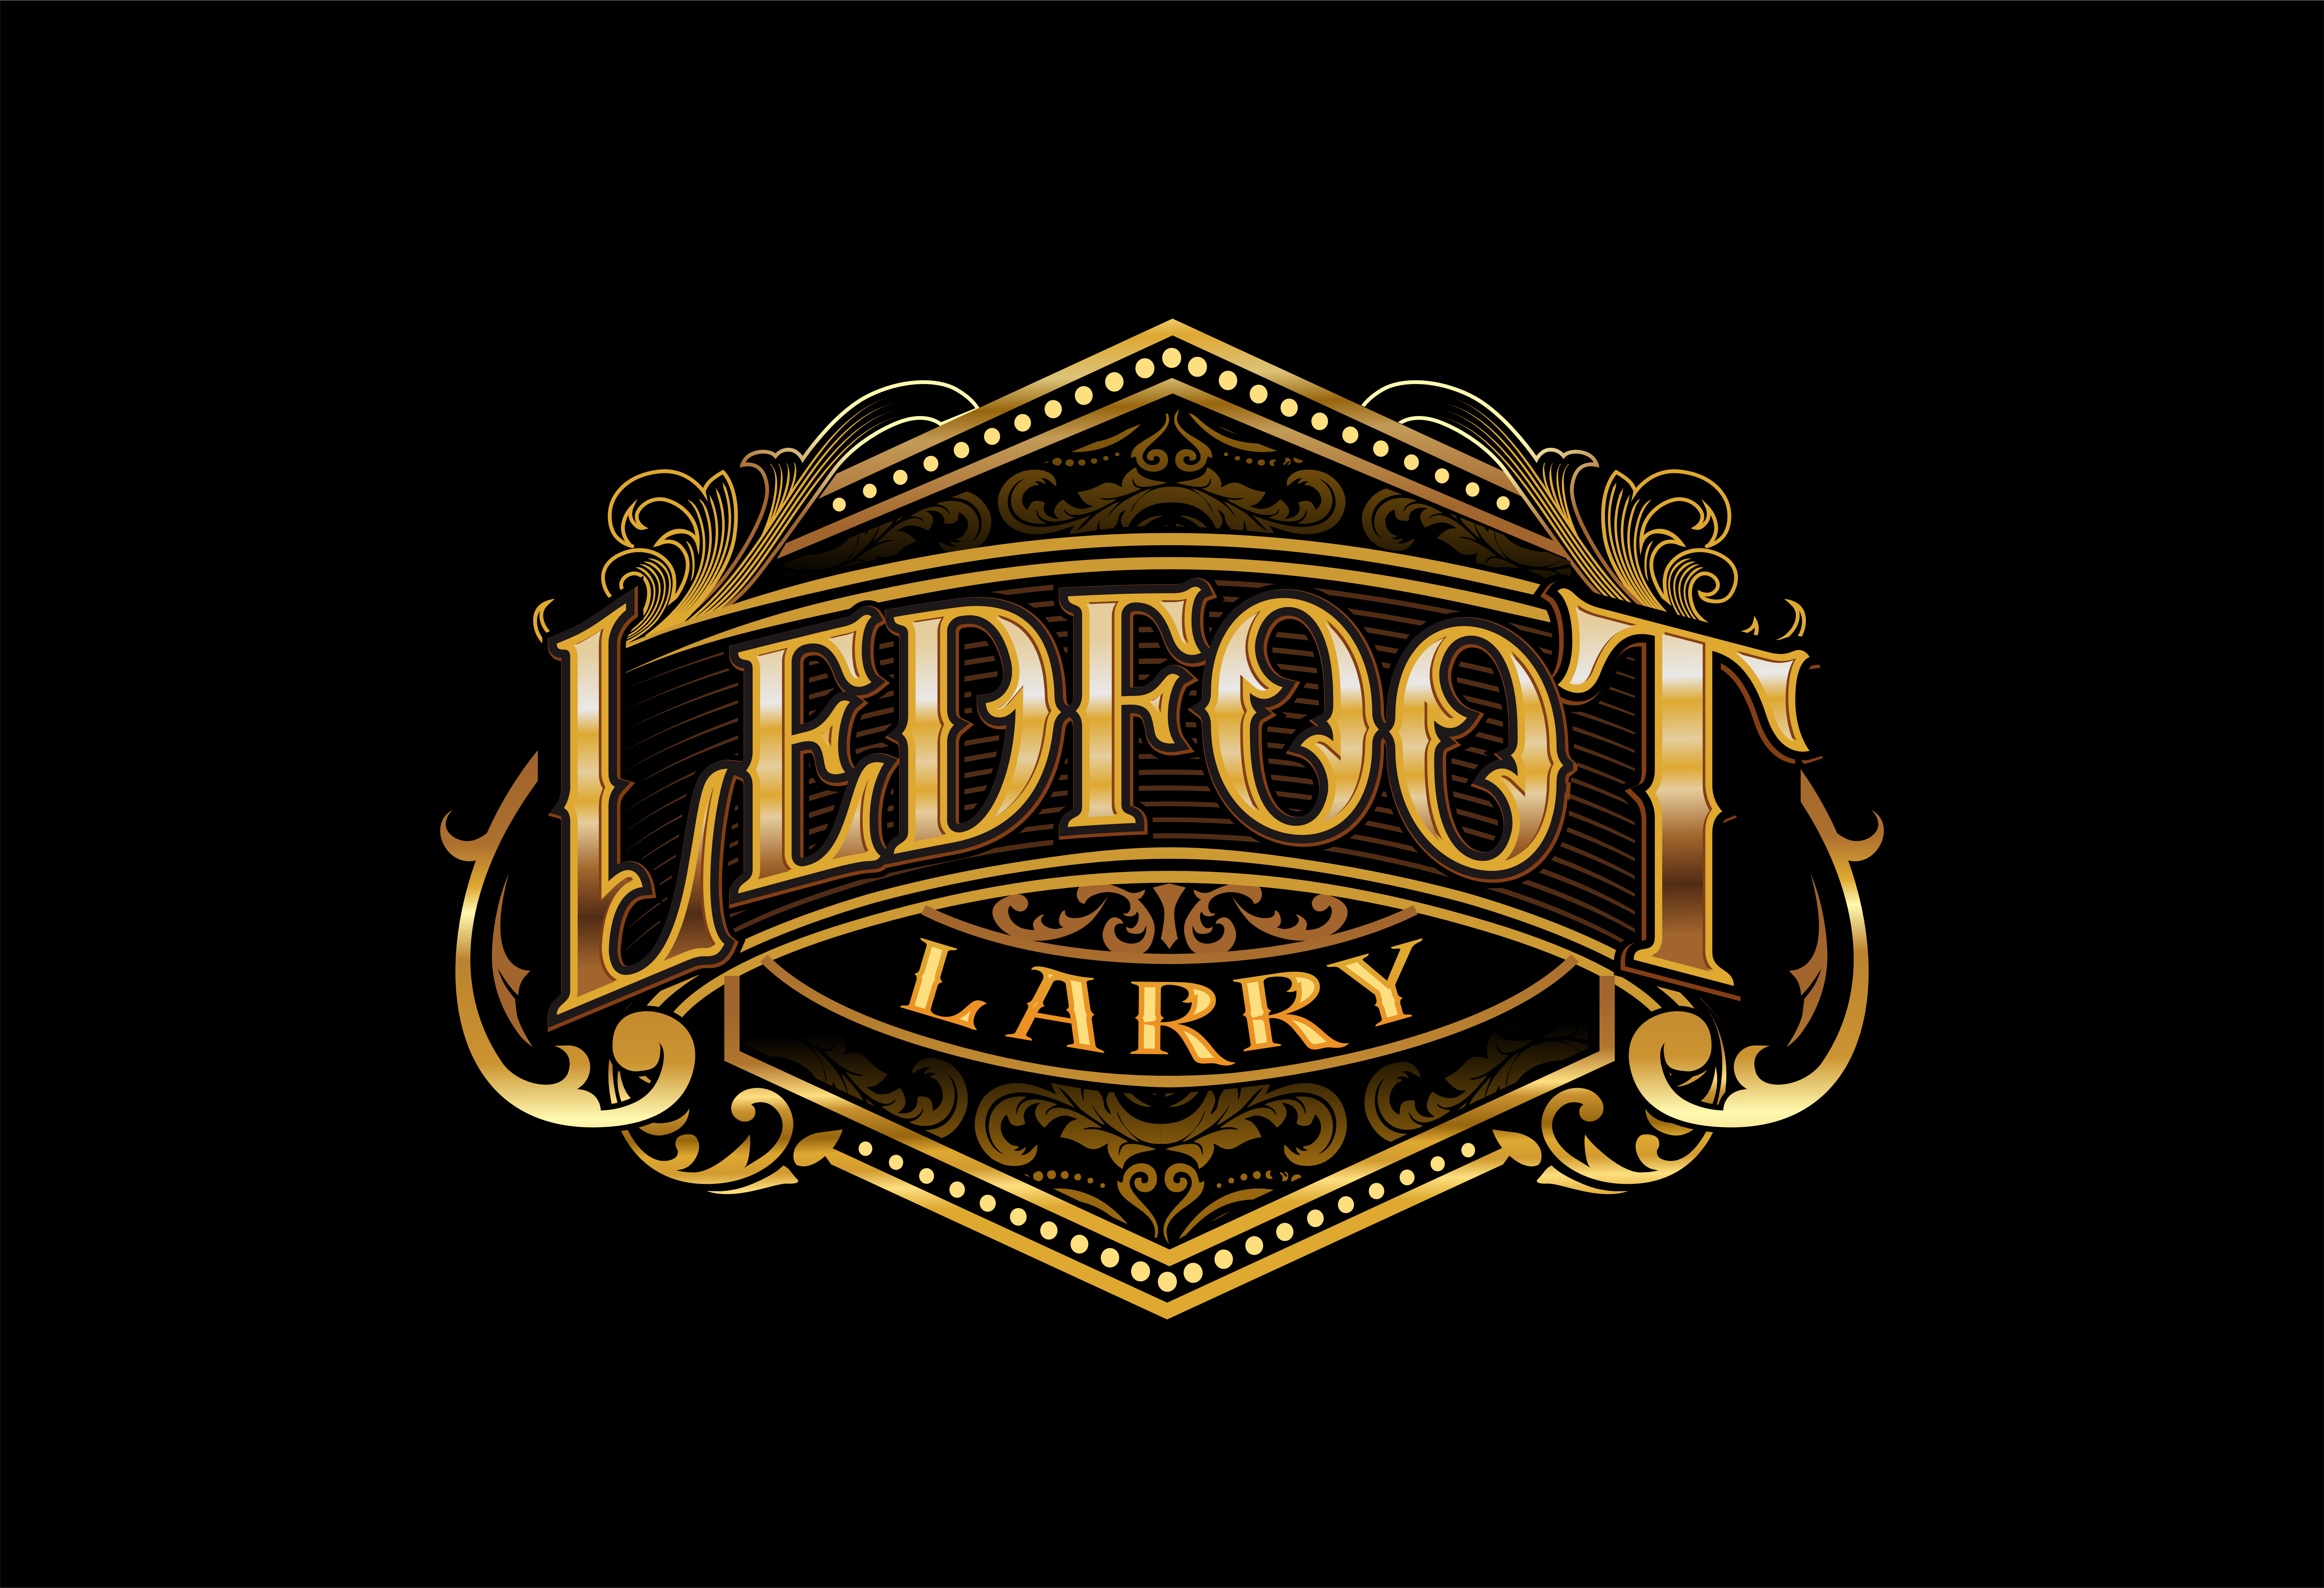 Ledfoot Larry